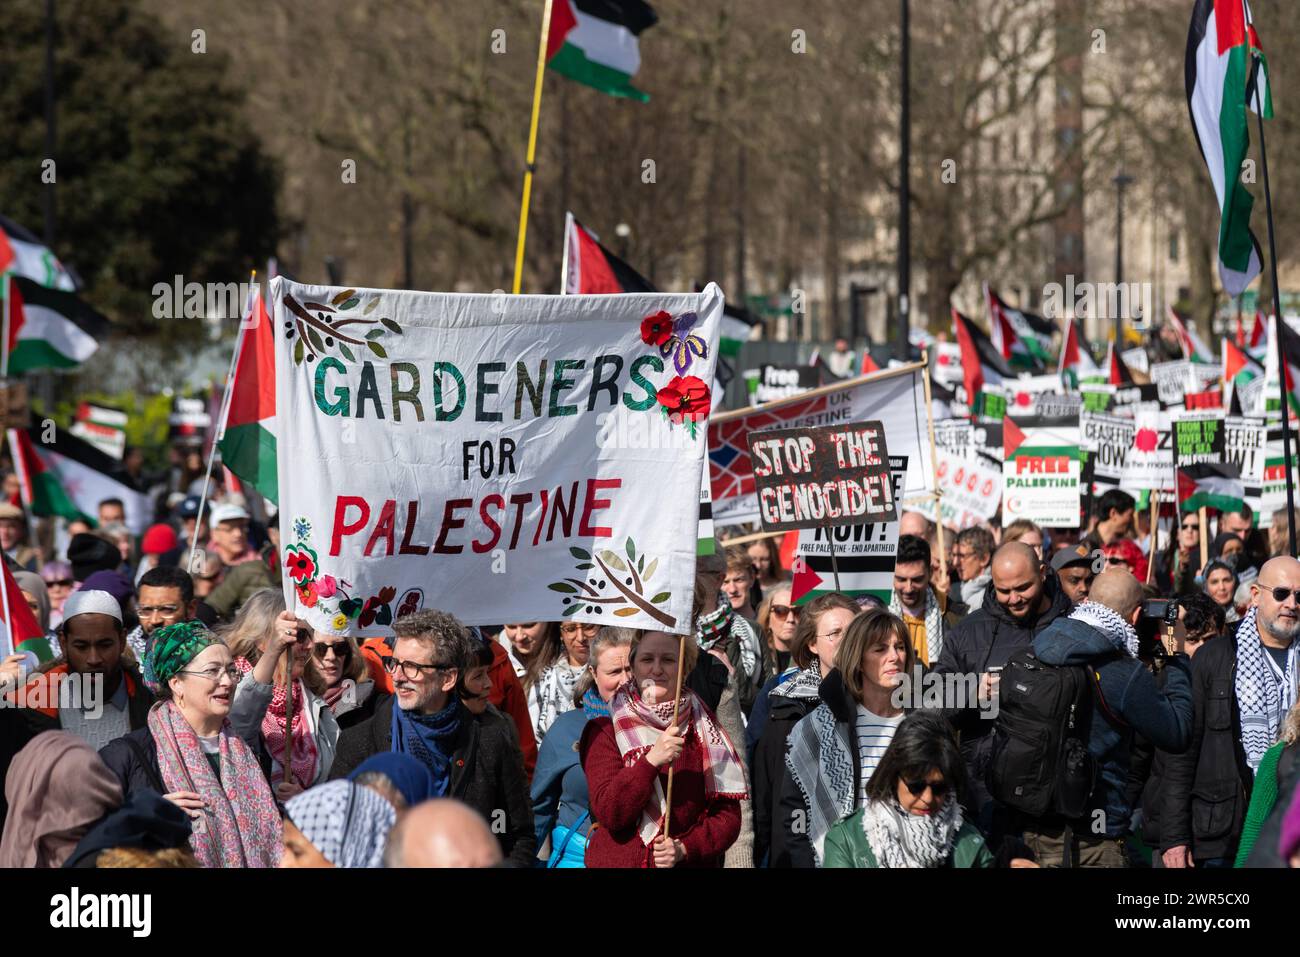 Pro-Palästina-protestmarsch in London, Großbritannien, Protest gegen den Konflikt im Gazastreifen und gegen die israelische Besatzung. Gärtner für Palästina Stockfoto